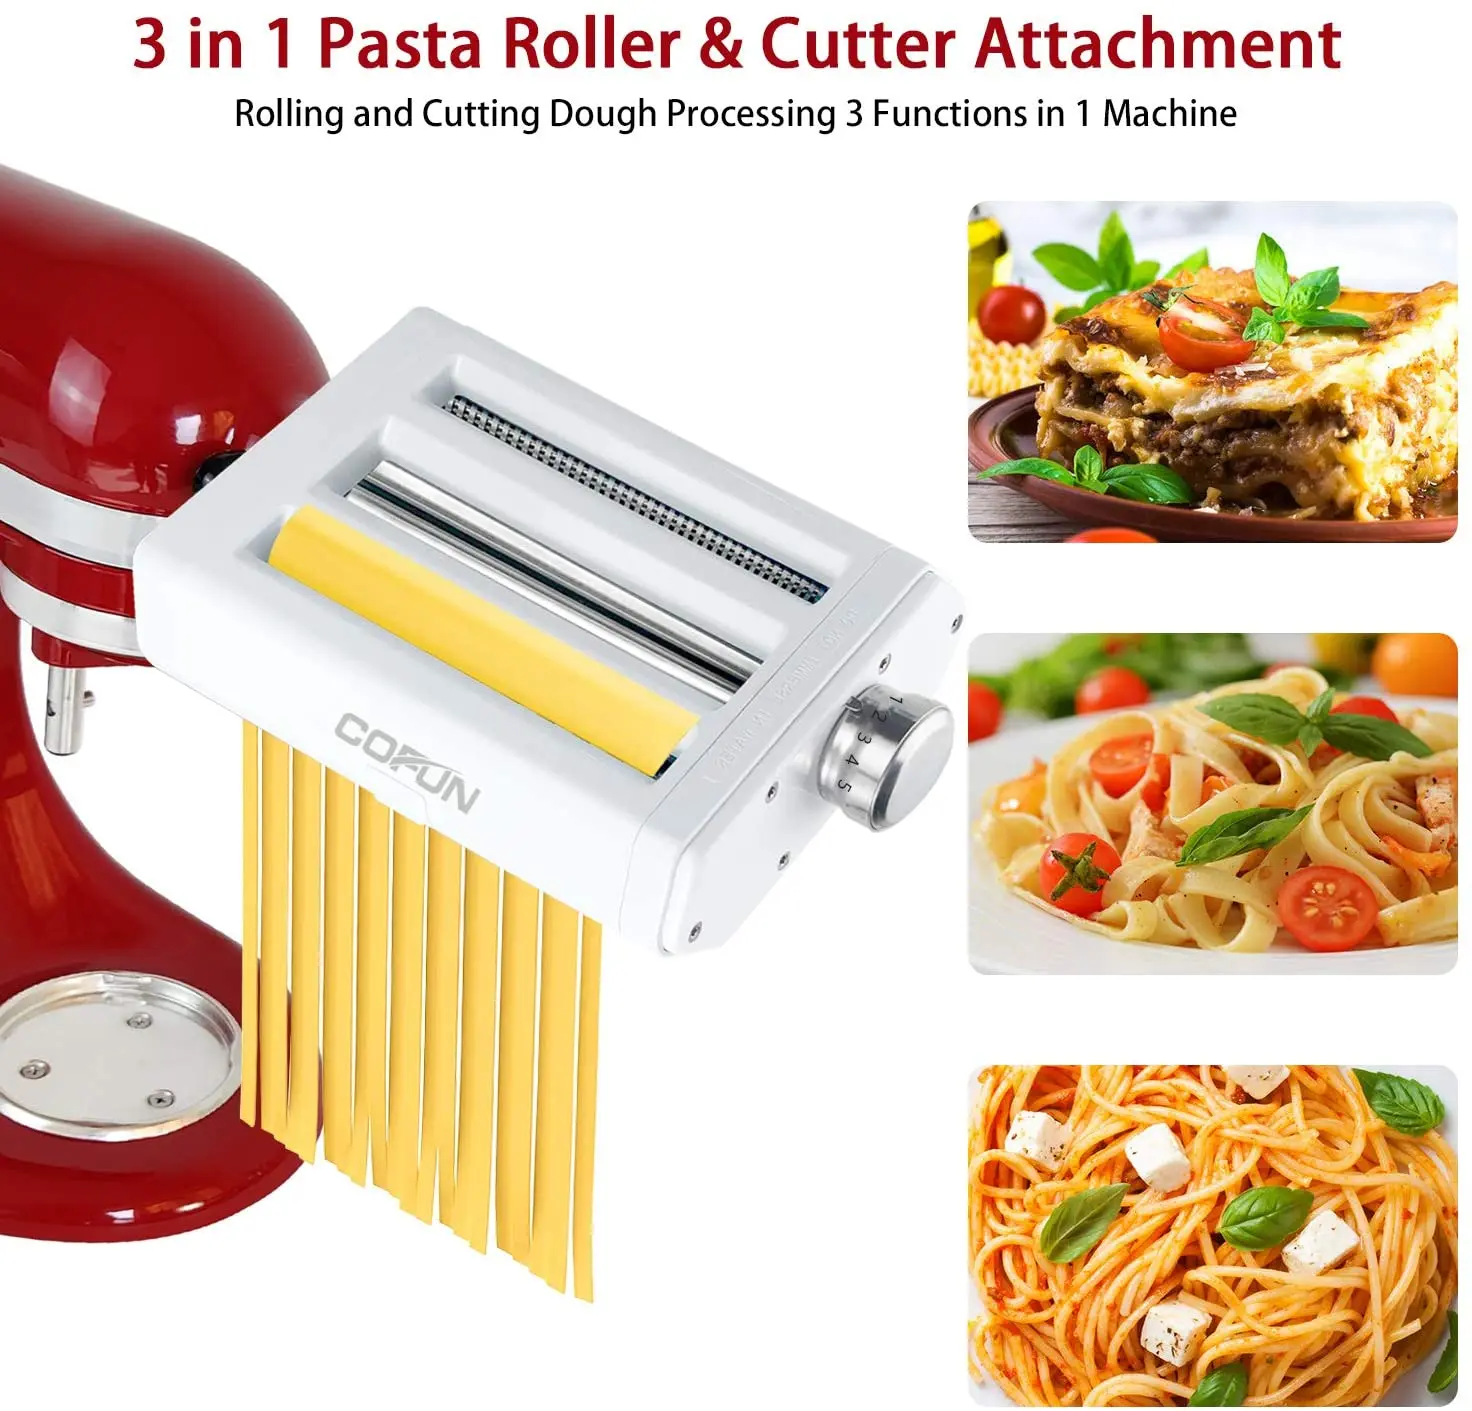 https://ae01.alicdn.com/kf/H24810441ef21453f9f3c02a5056472dd1/For-kitchen-pasta-machine-stainless-steel-pasta-stand-mixer-noodle-accessories-kitchen-tool-KitchenAid-accessories.jpg